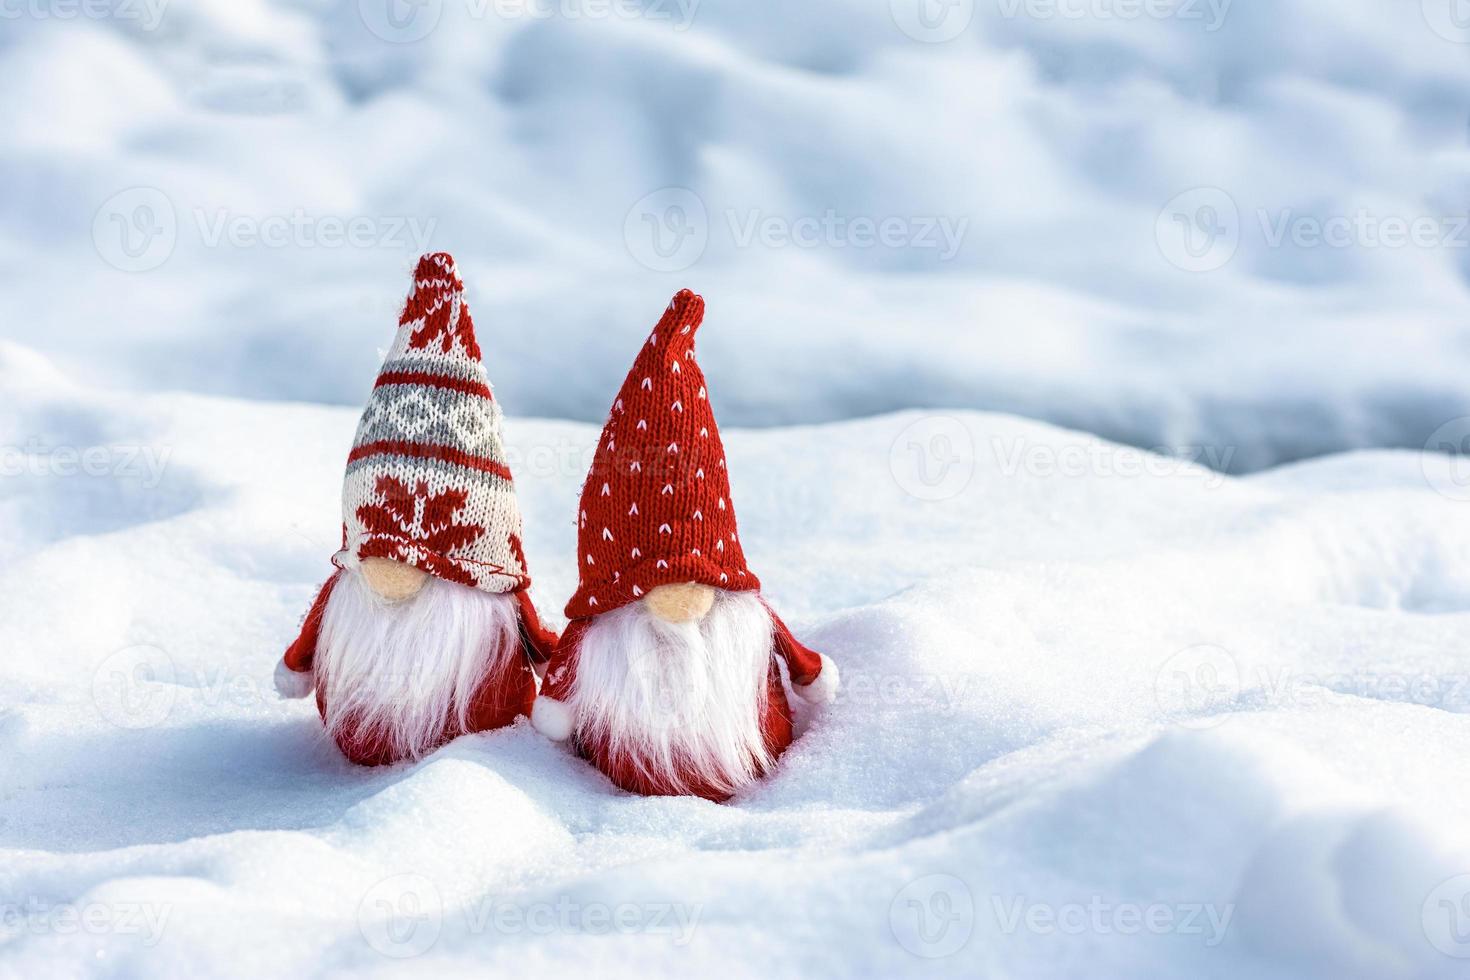 tarjeta de vacaciones de navidad lindos gnomos escandinavos con sombrero rojo y barba blanca en el bosque de invierno nevado cuento de hadas nevadas invierno hola diciembre, enero, concepto de febrero feliz año nuevo, navidad foto